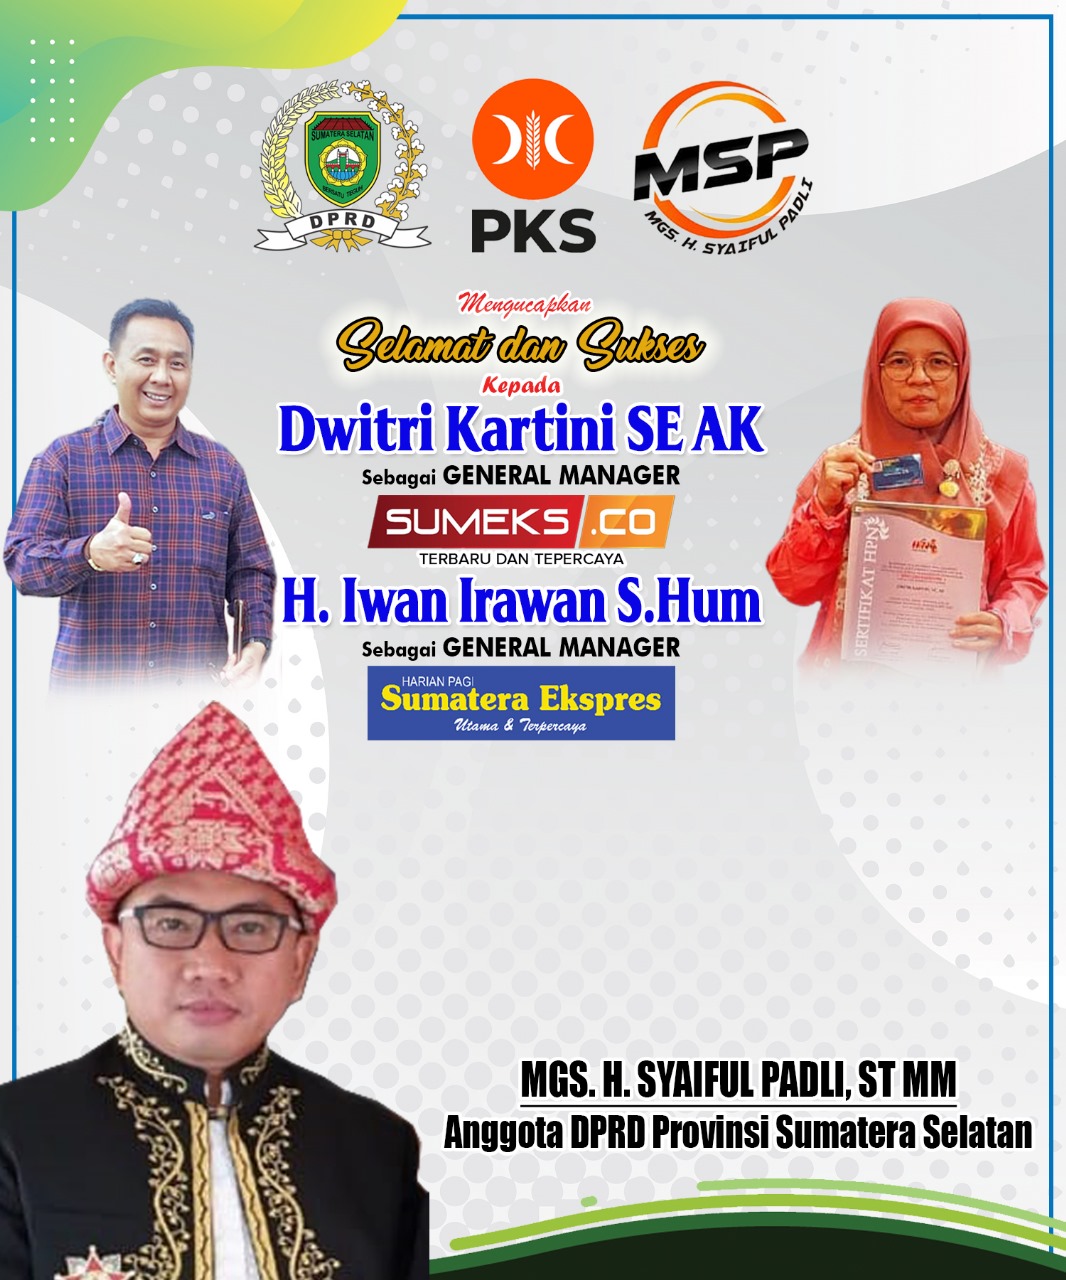 Mgs. H. Syaiful Padli Mengucapkan Selamat dan Sukses Kepada H. Iwan Irawan dan Dwitri Kartini